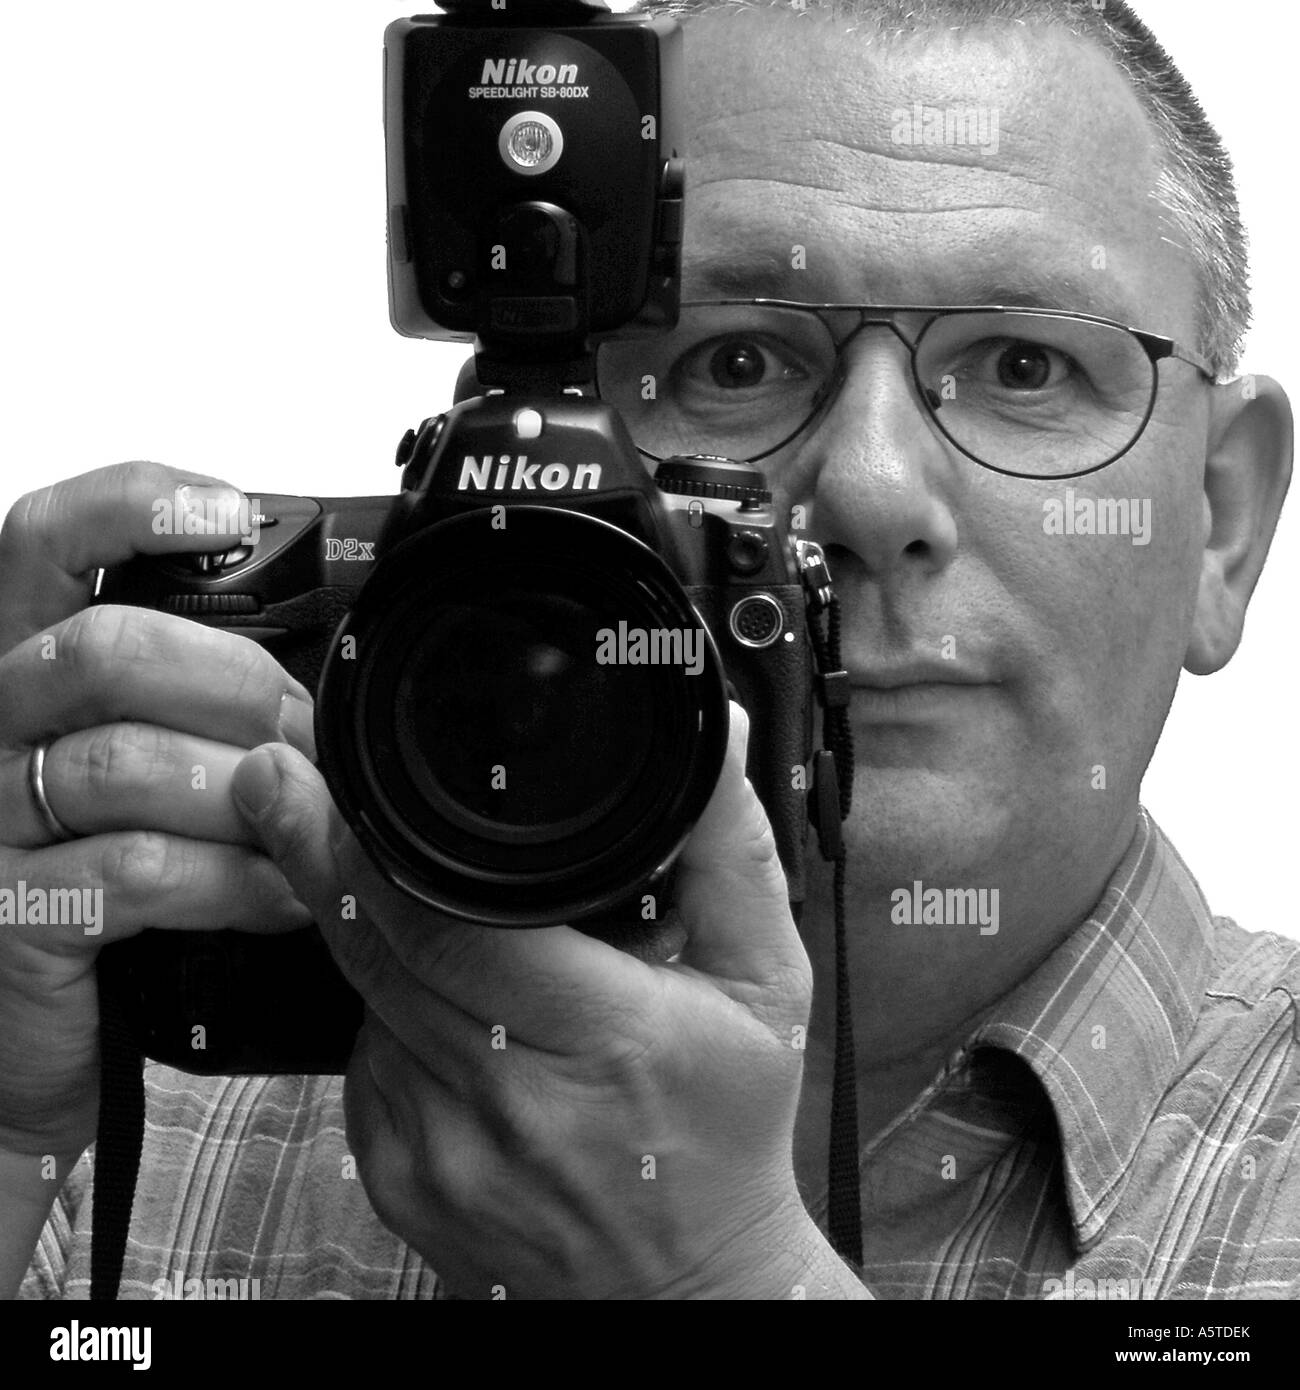 El hombre con la cámara Nikon D2X Foto de stock